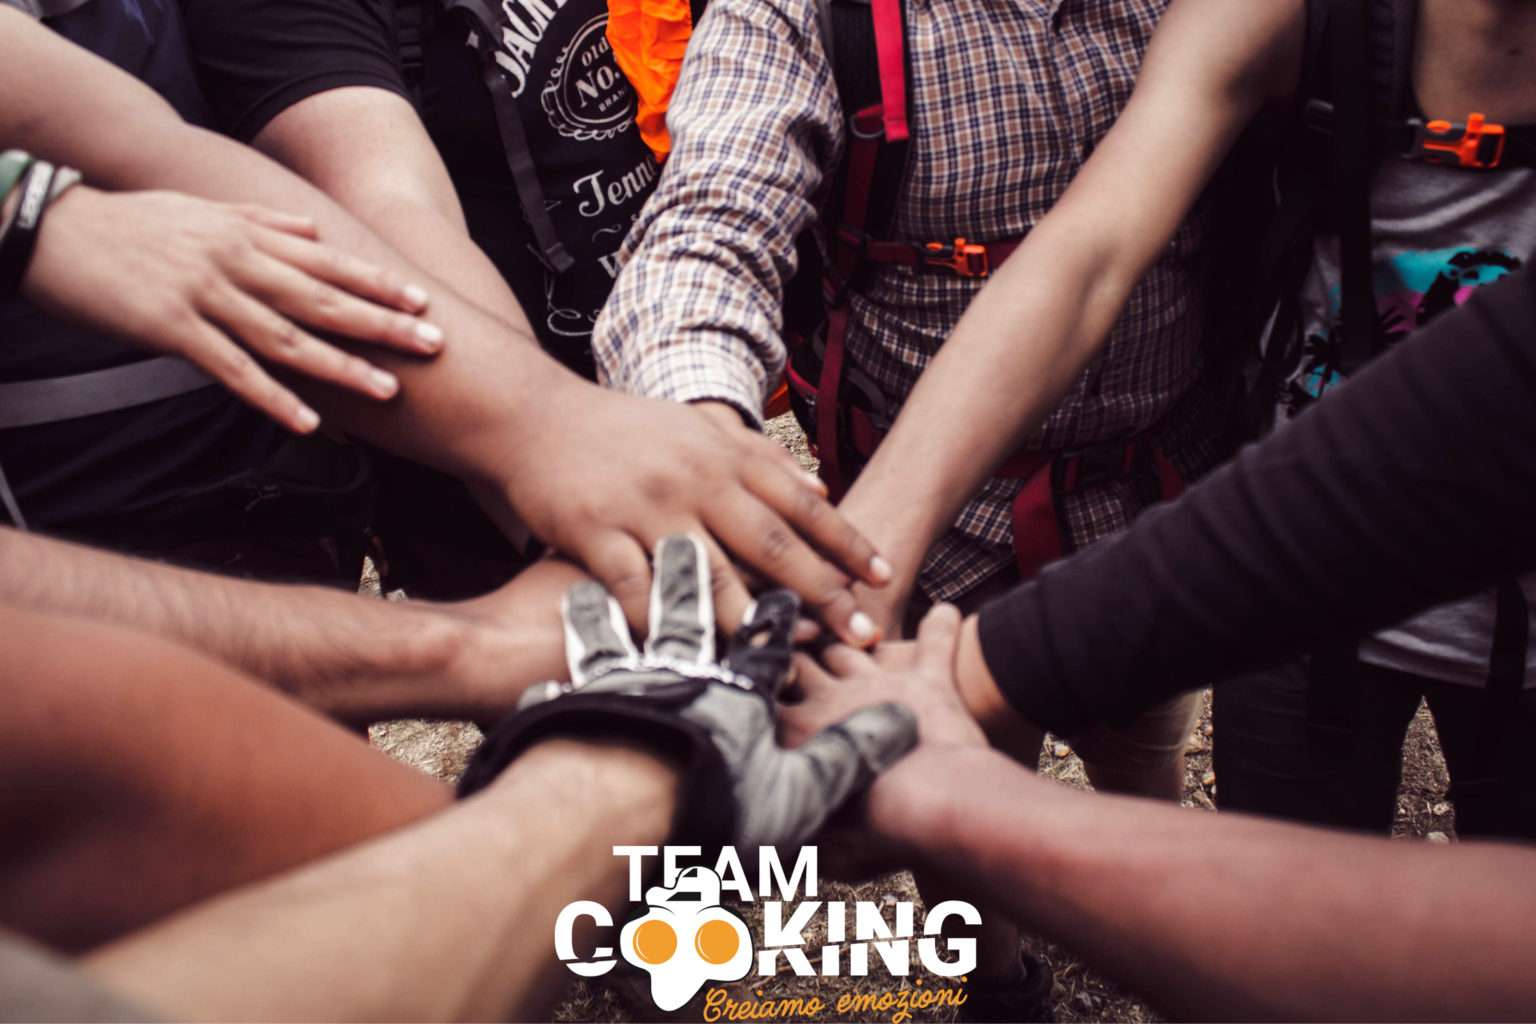 Team-Building-cooking.jpg